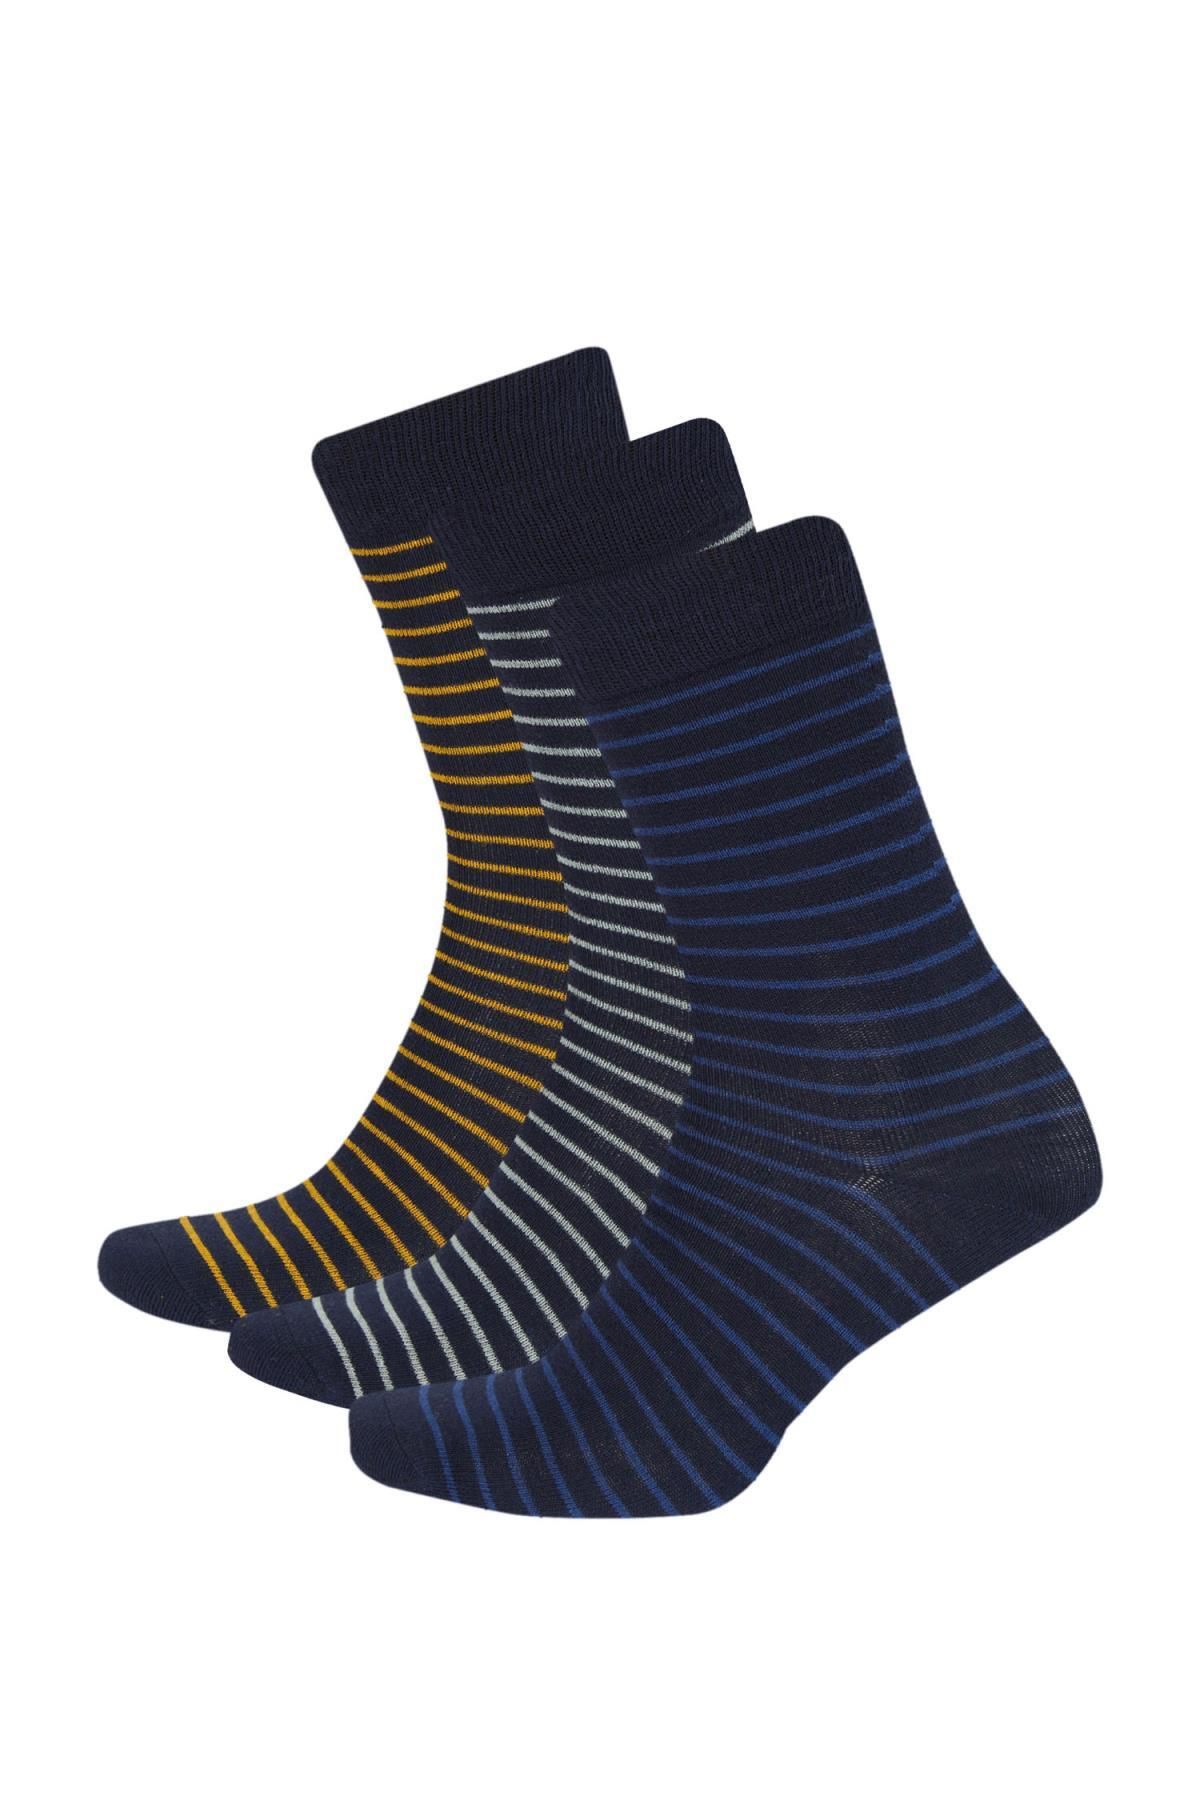 Defacto Erkek 3lü Pamuklu Uzun Çorap C1004axns